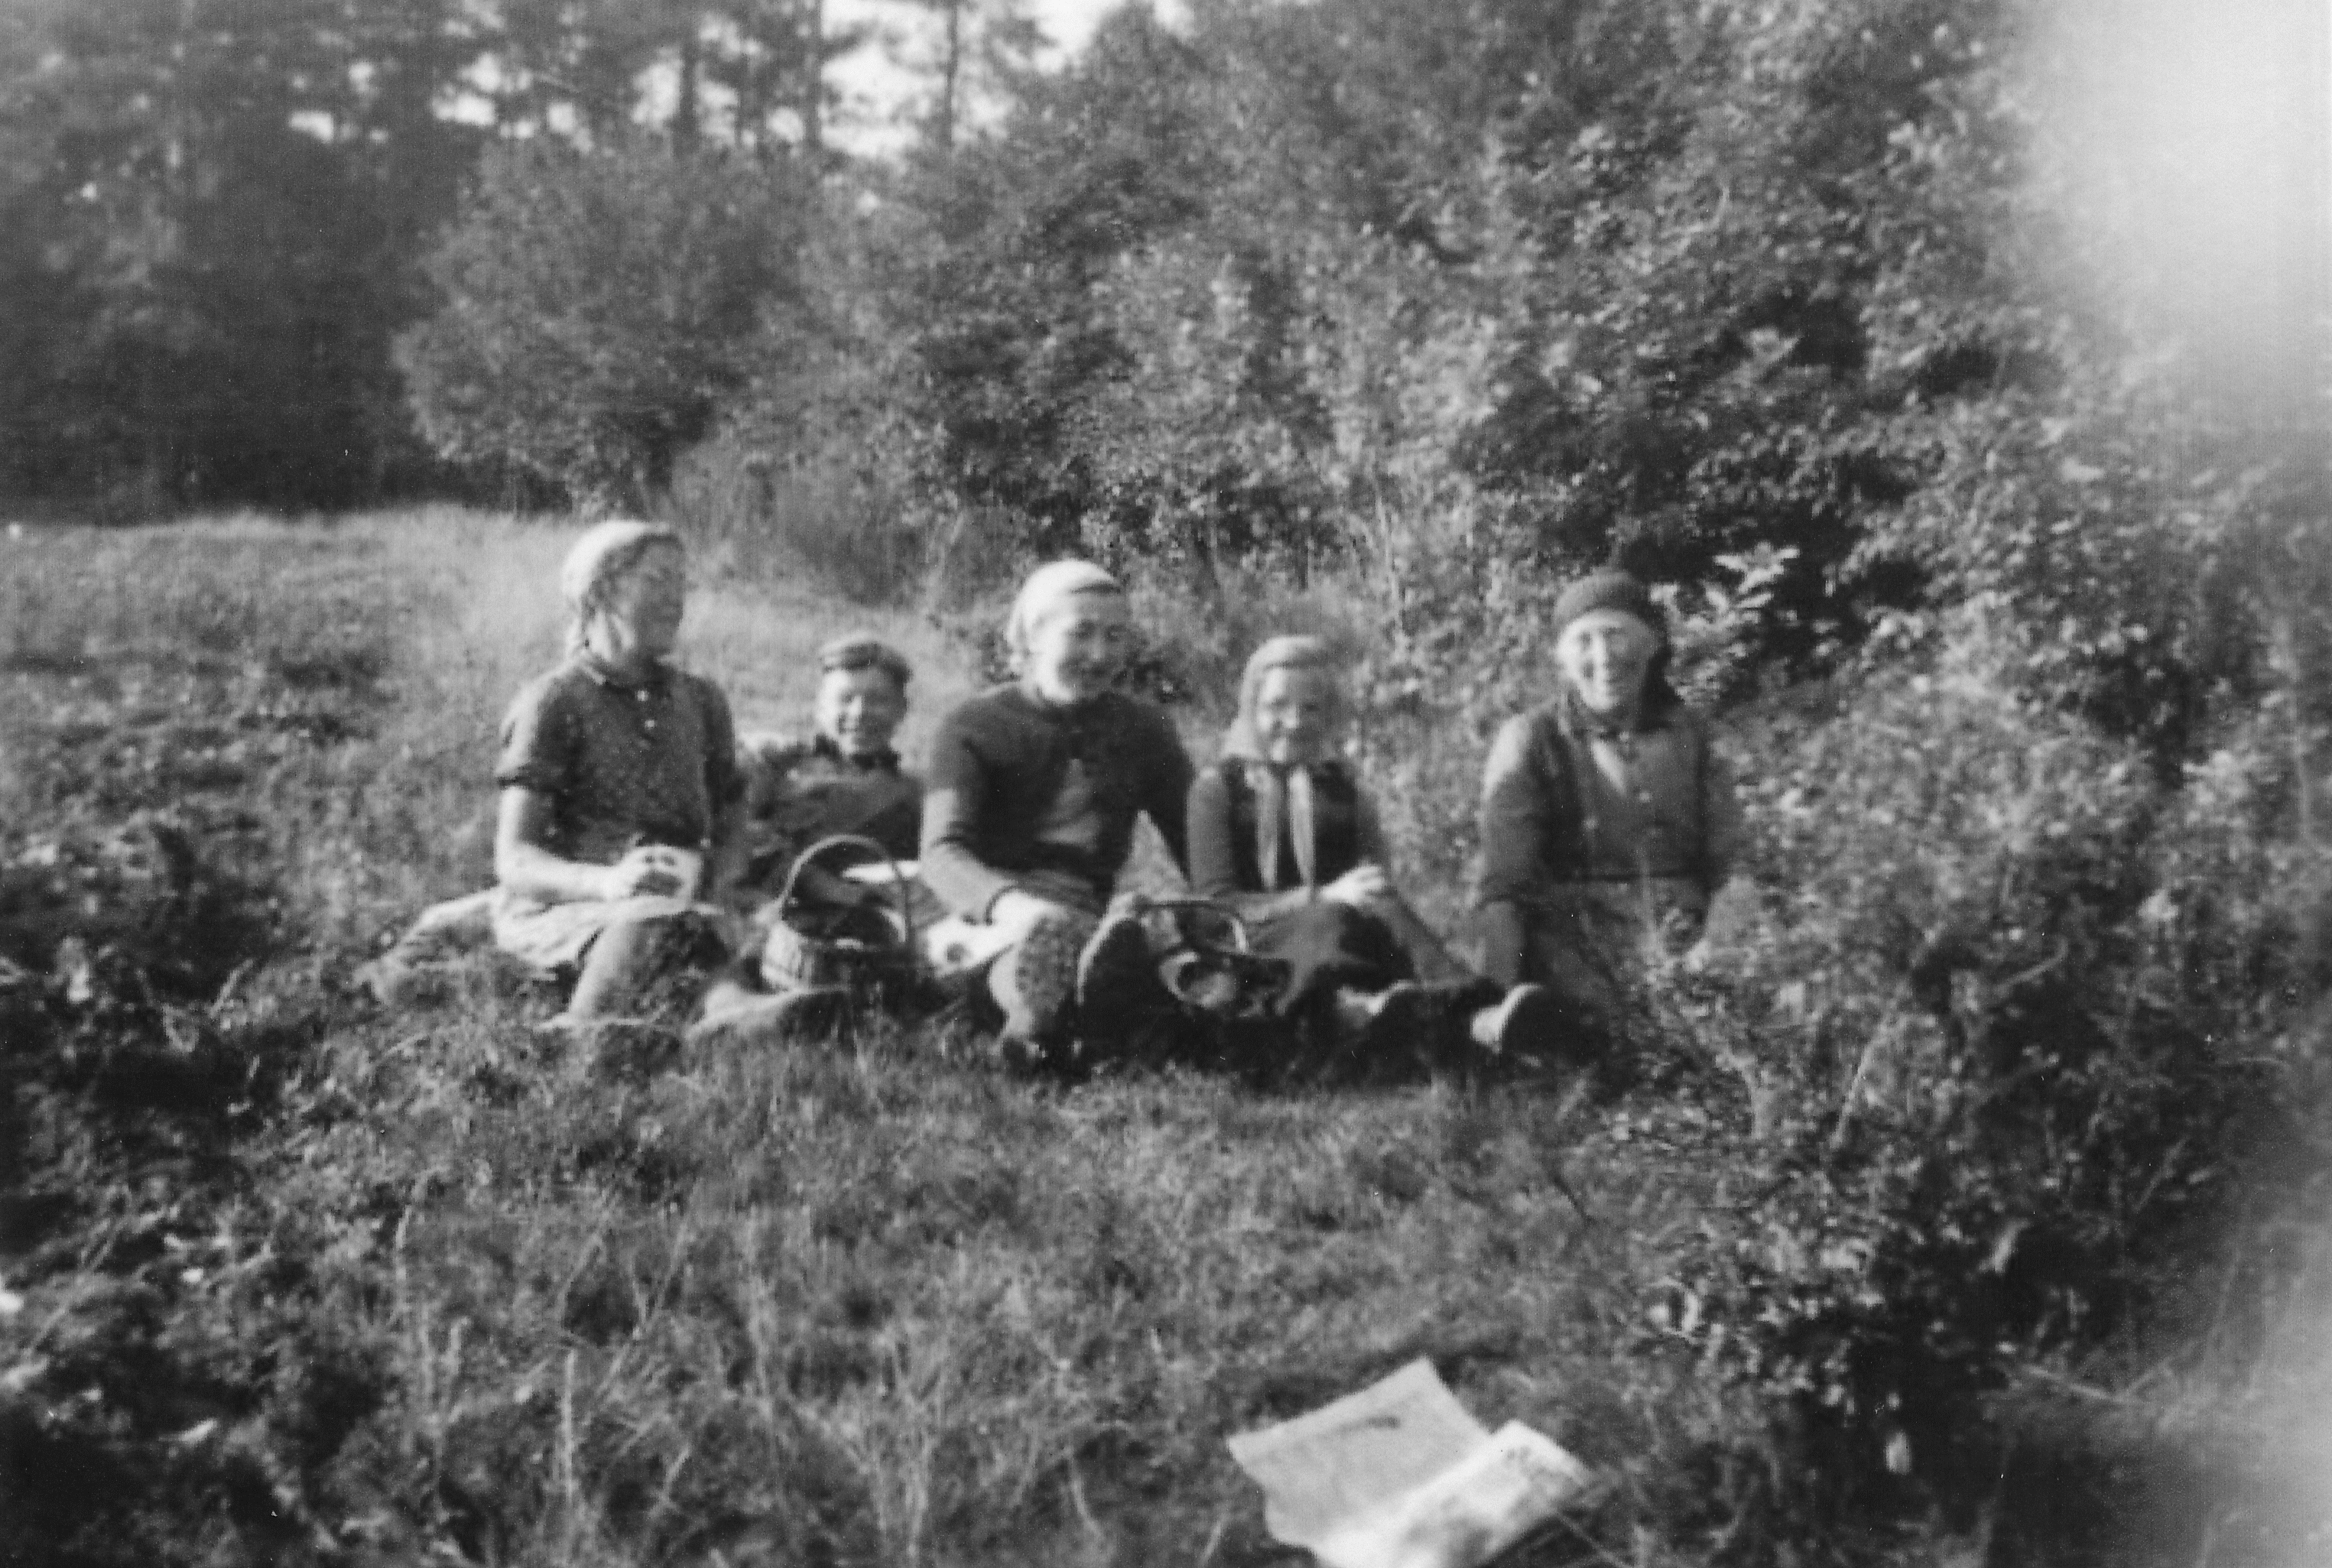 1943, von links nach rechts: Tante Hanna, Michal, Oma Hilda, unbekannt, Tante Lina